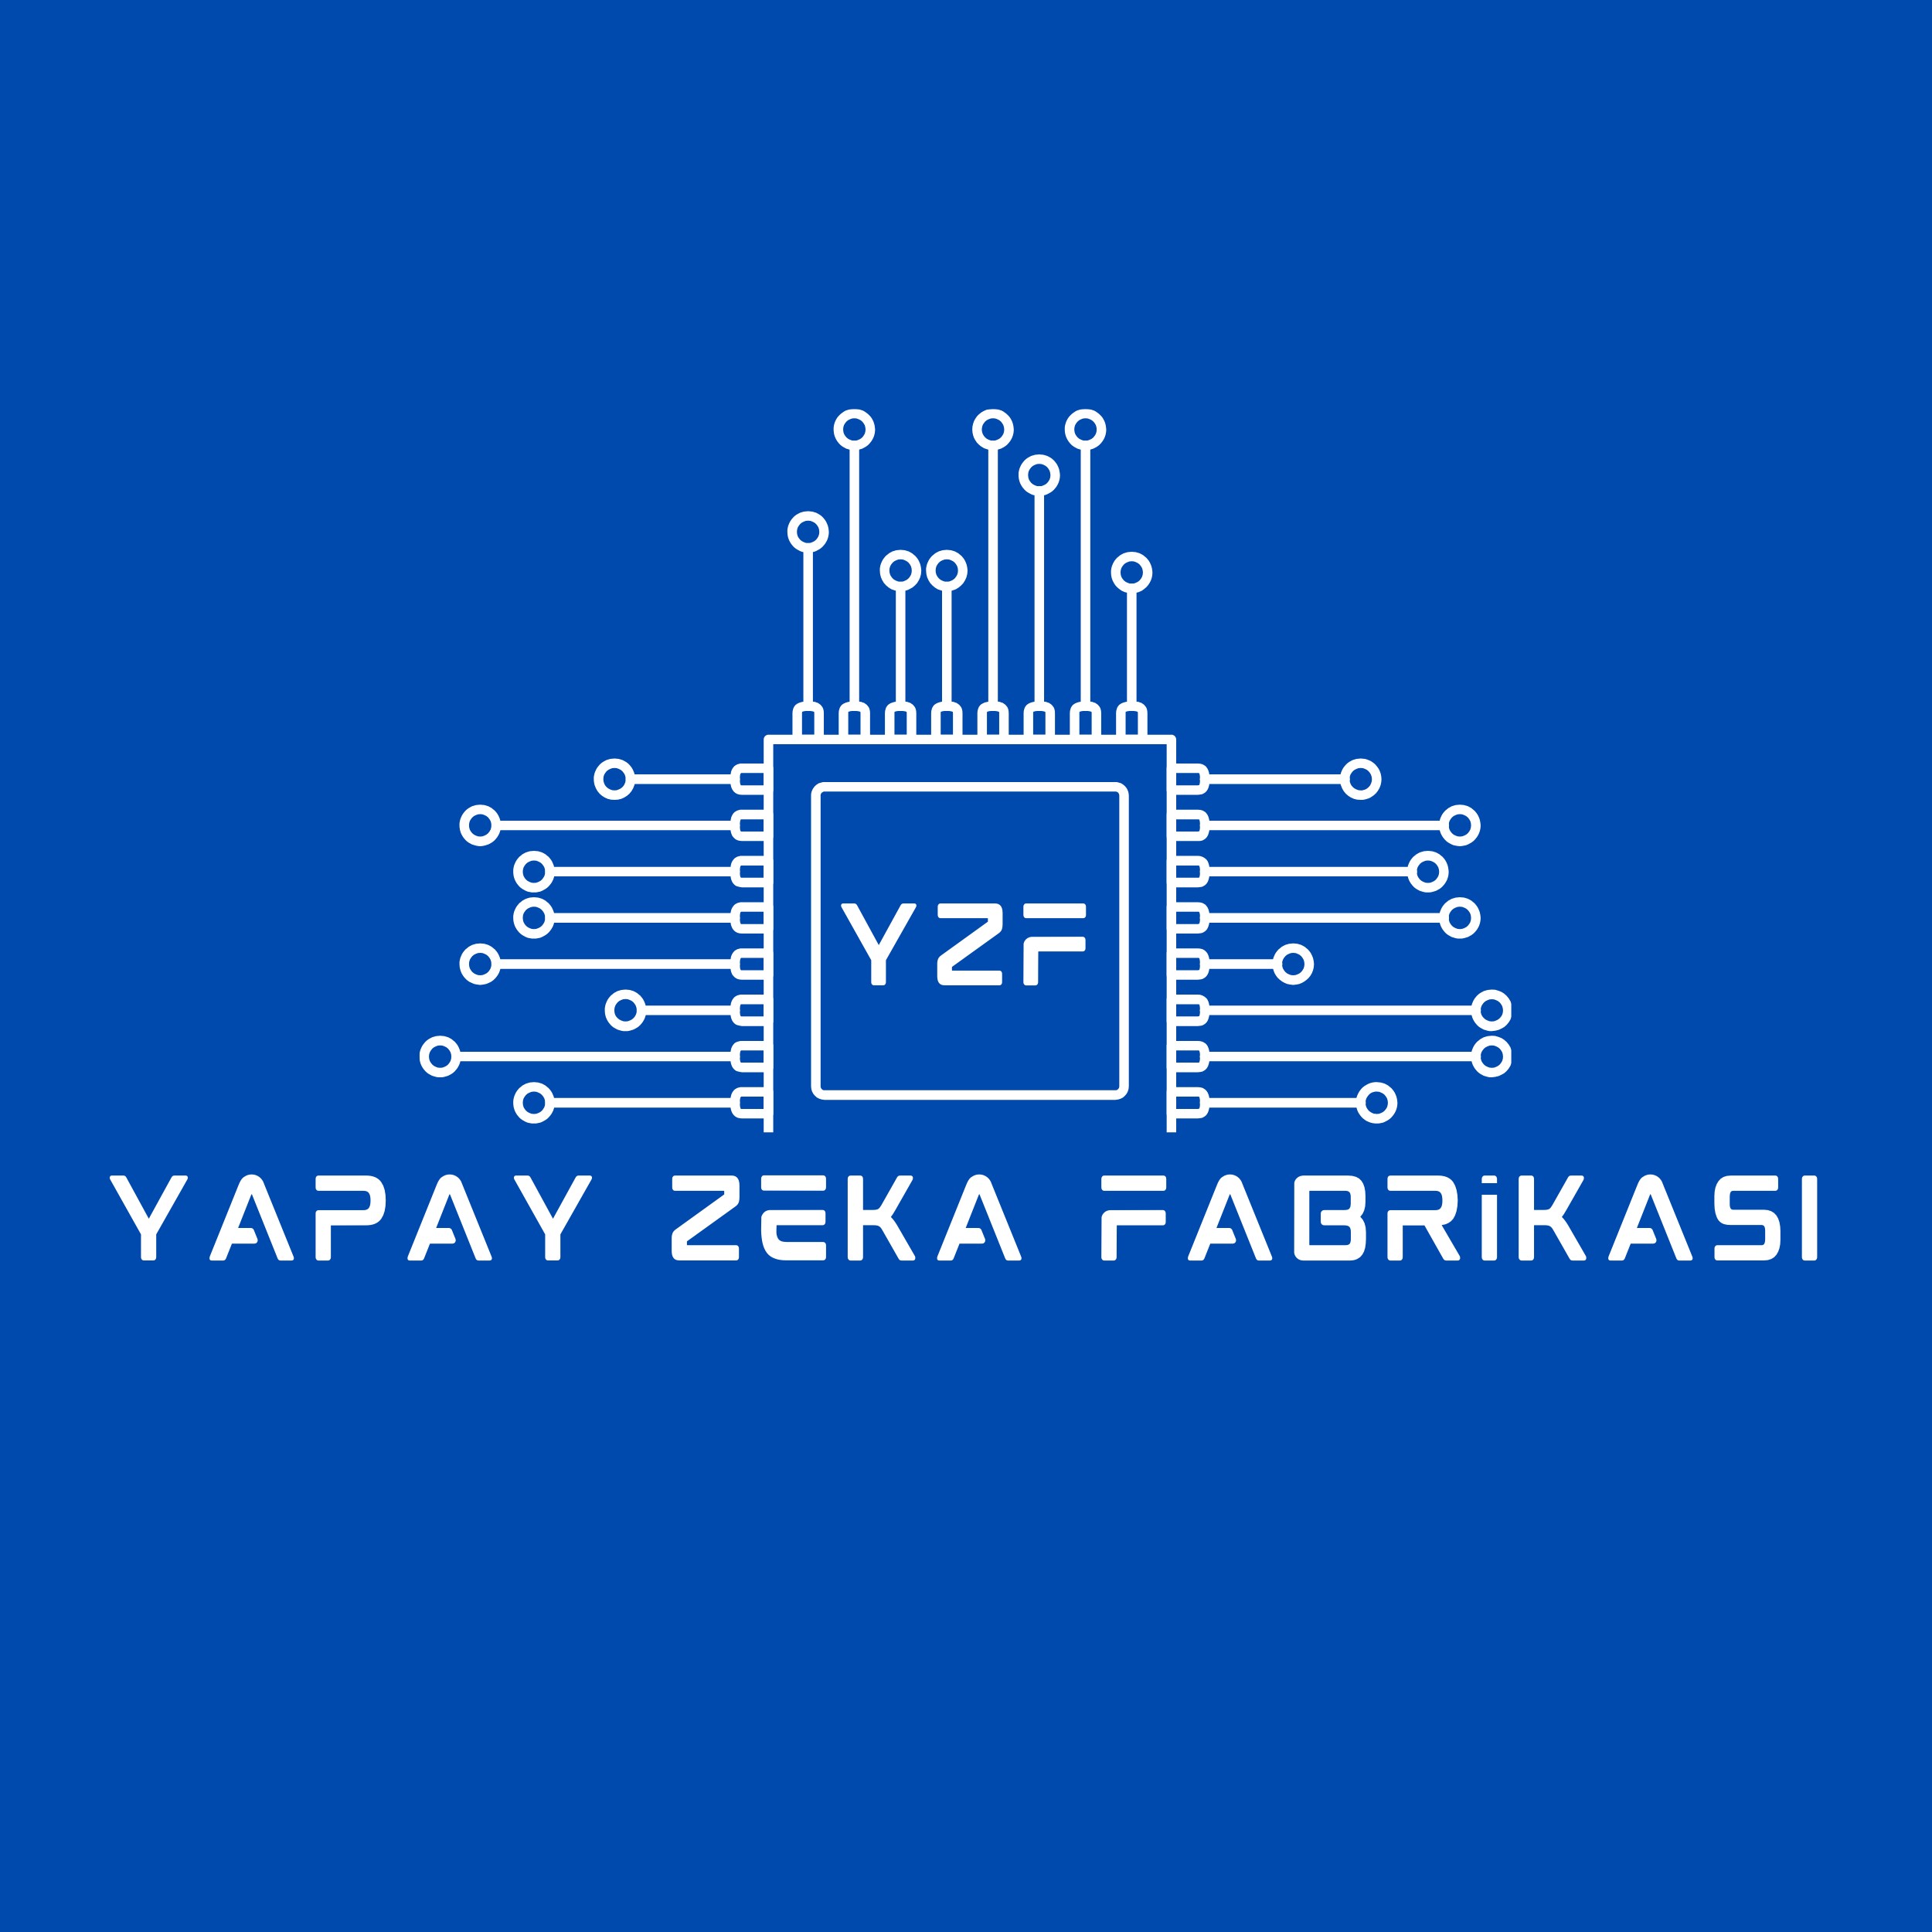 1704879113-yapay-zeka-fabrikasi-logo.jpeg